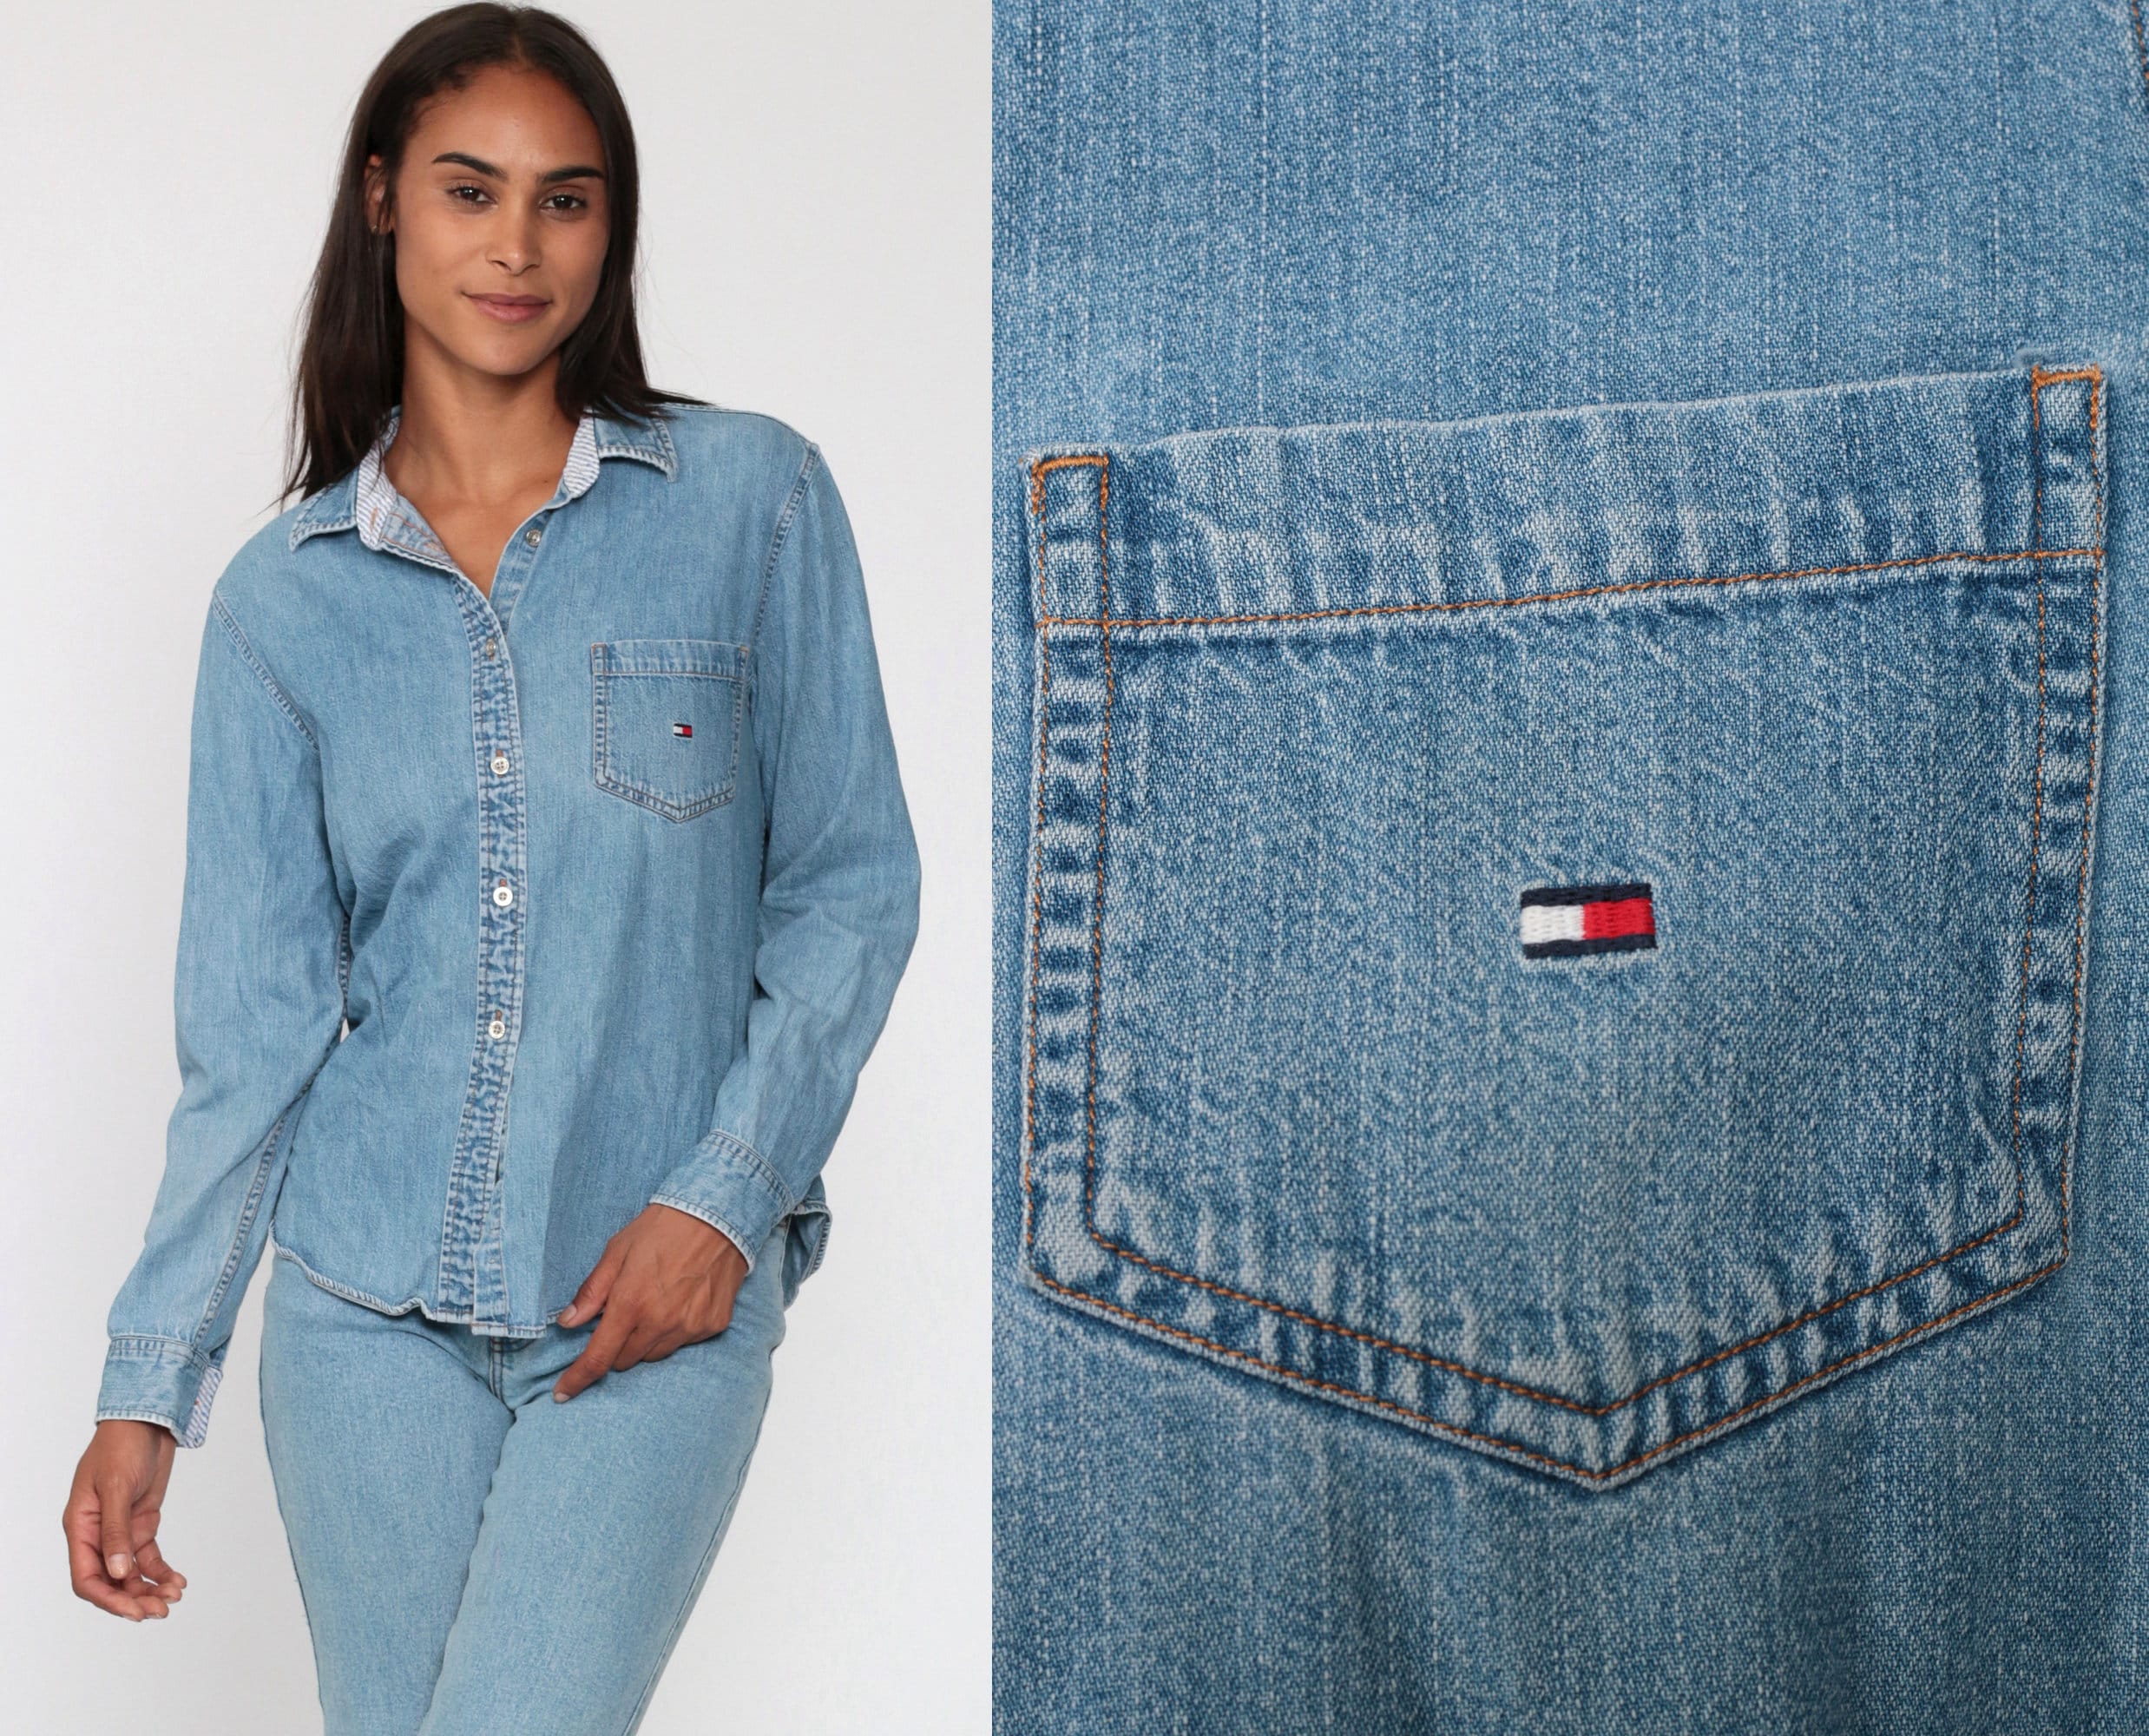 TOMMY HILFIGER Jean Shirt Shirt Button Up Shirt 1990s Light Blue Grunge Denim Long Sleeve Oversized Button Down Streetwear Medium